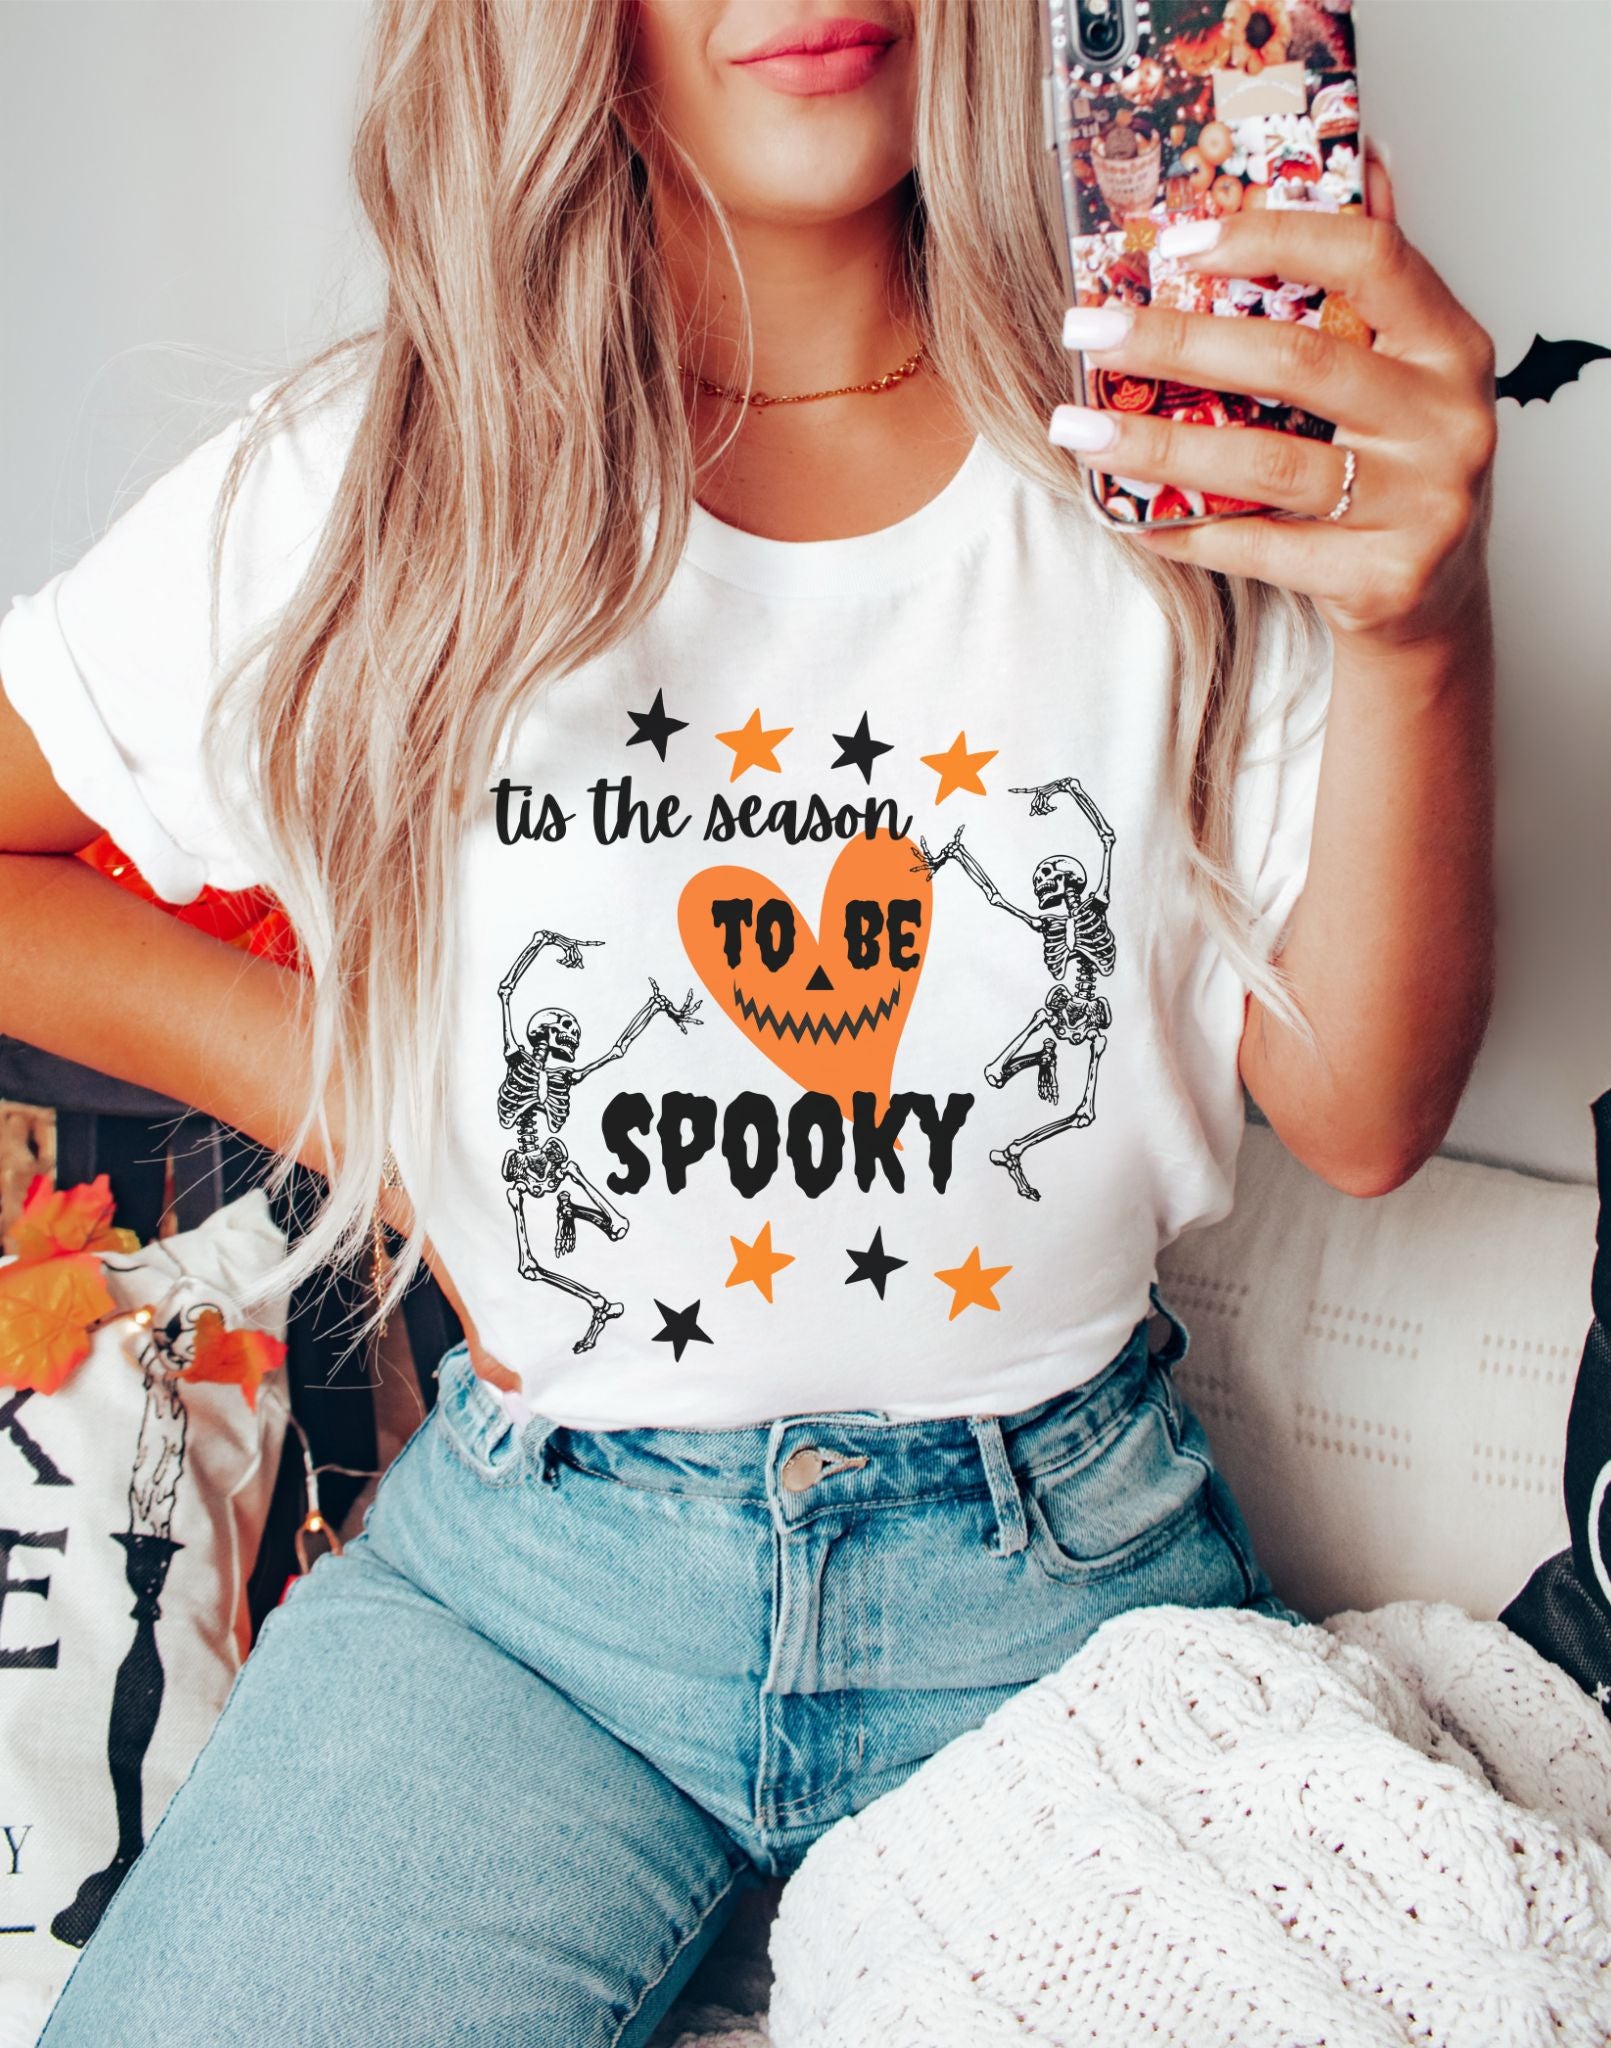 Tis the Season to be Spooky